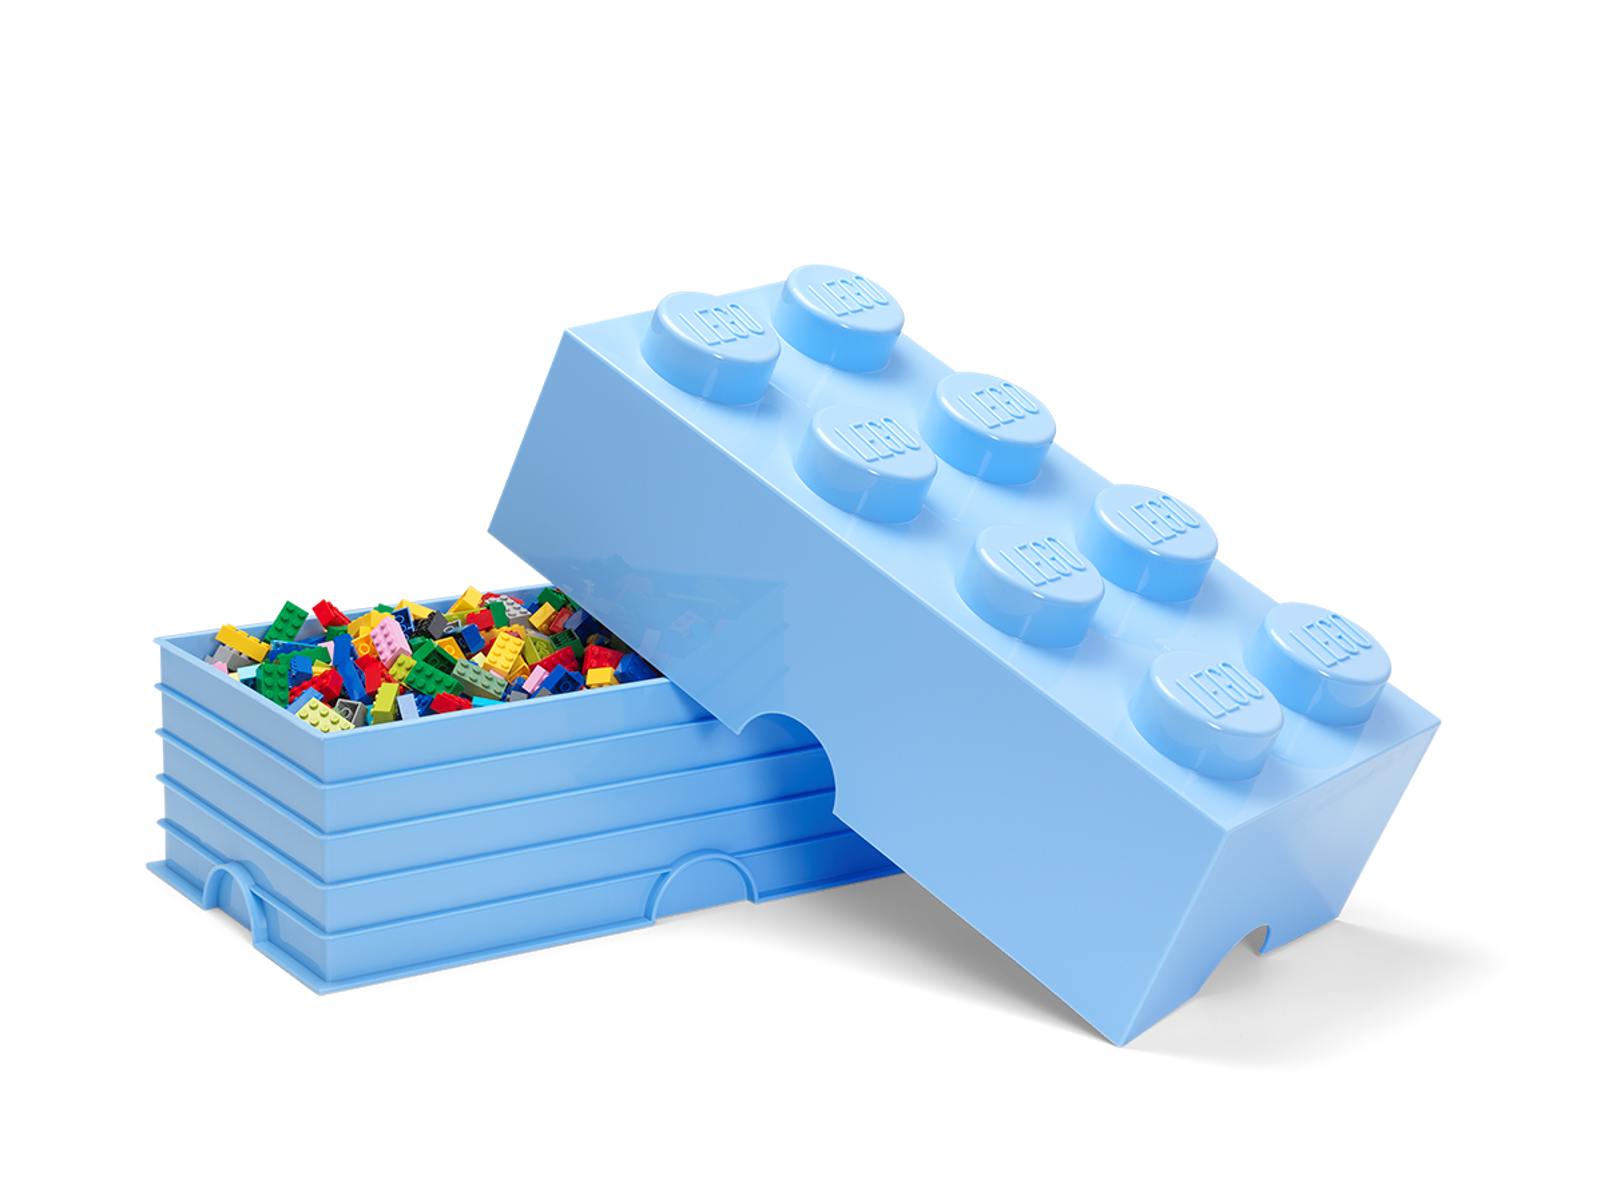 Lego Brick Aqua Light Blue Big 8 Units - Albagame